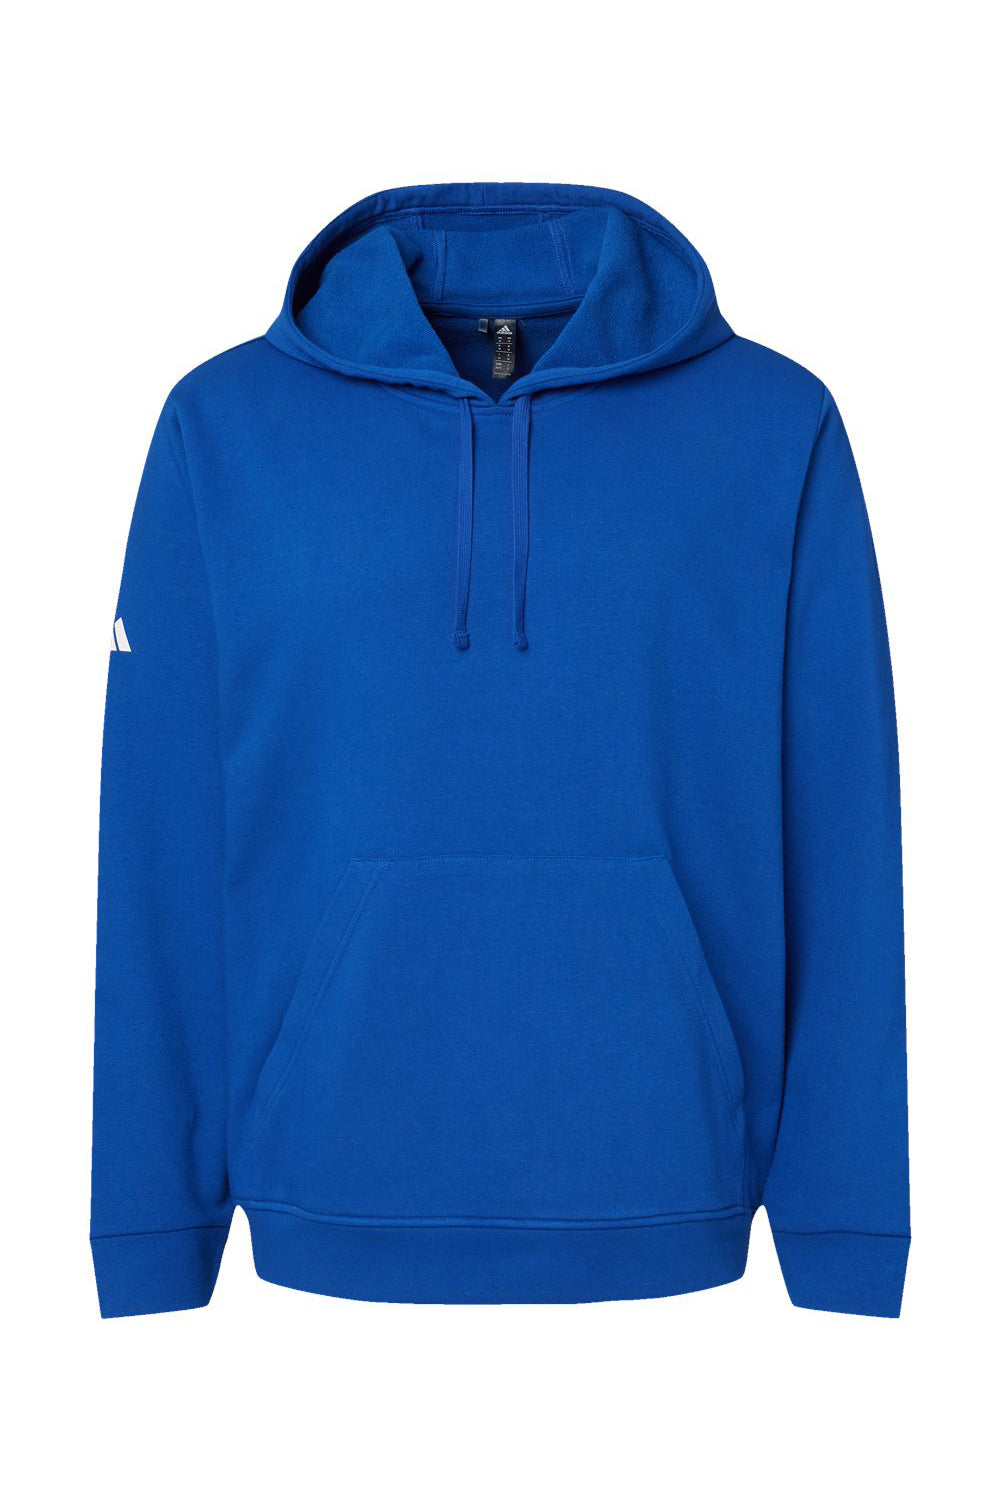 Adidas A432 Mens Fleece Hooded Sweatshirt Hoodie Collegiate Royal Blue Flat Front